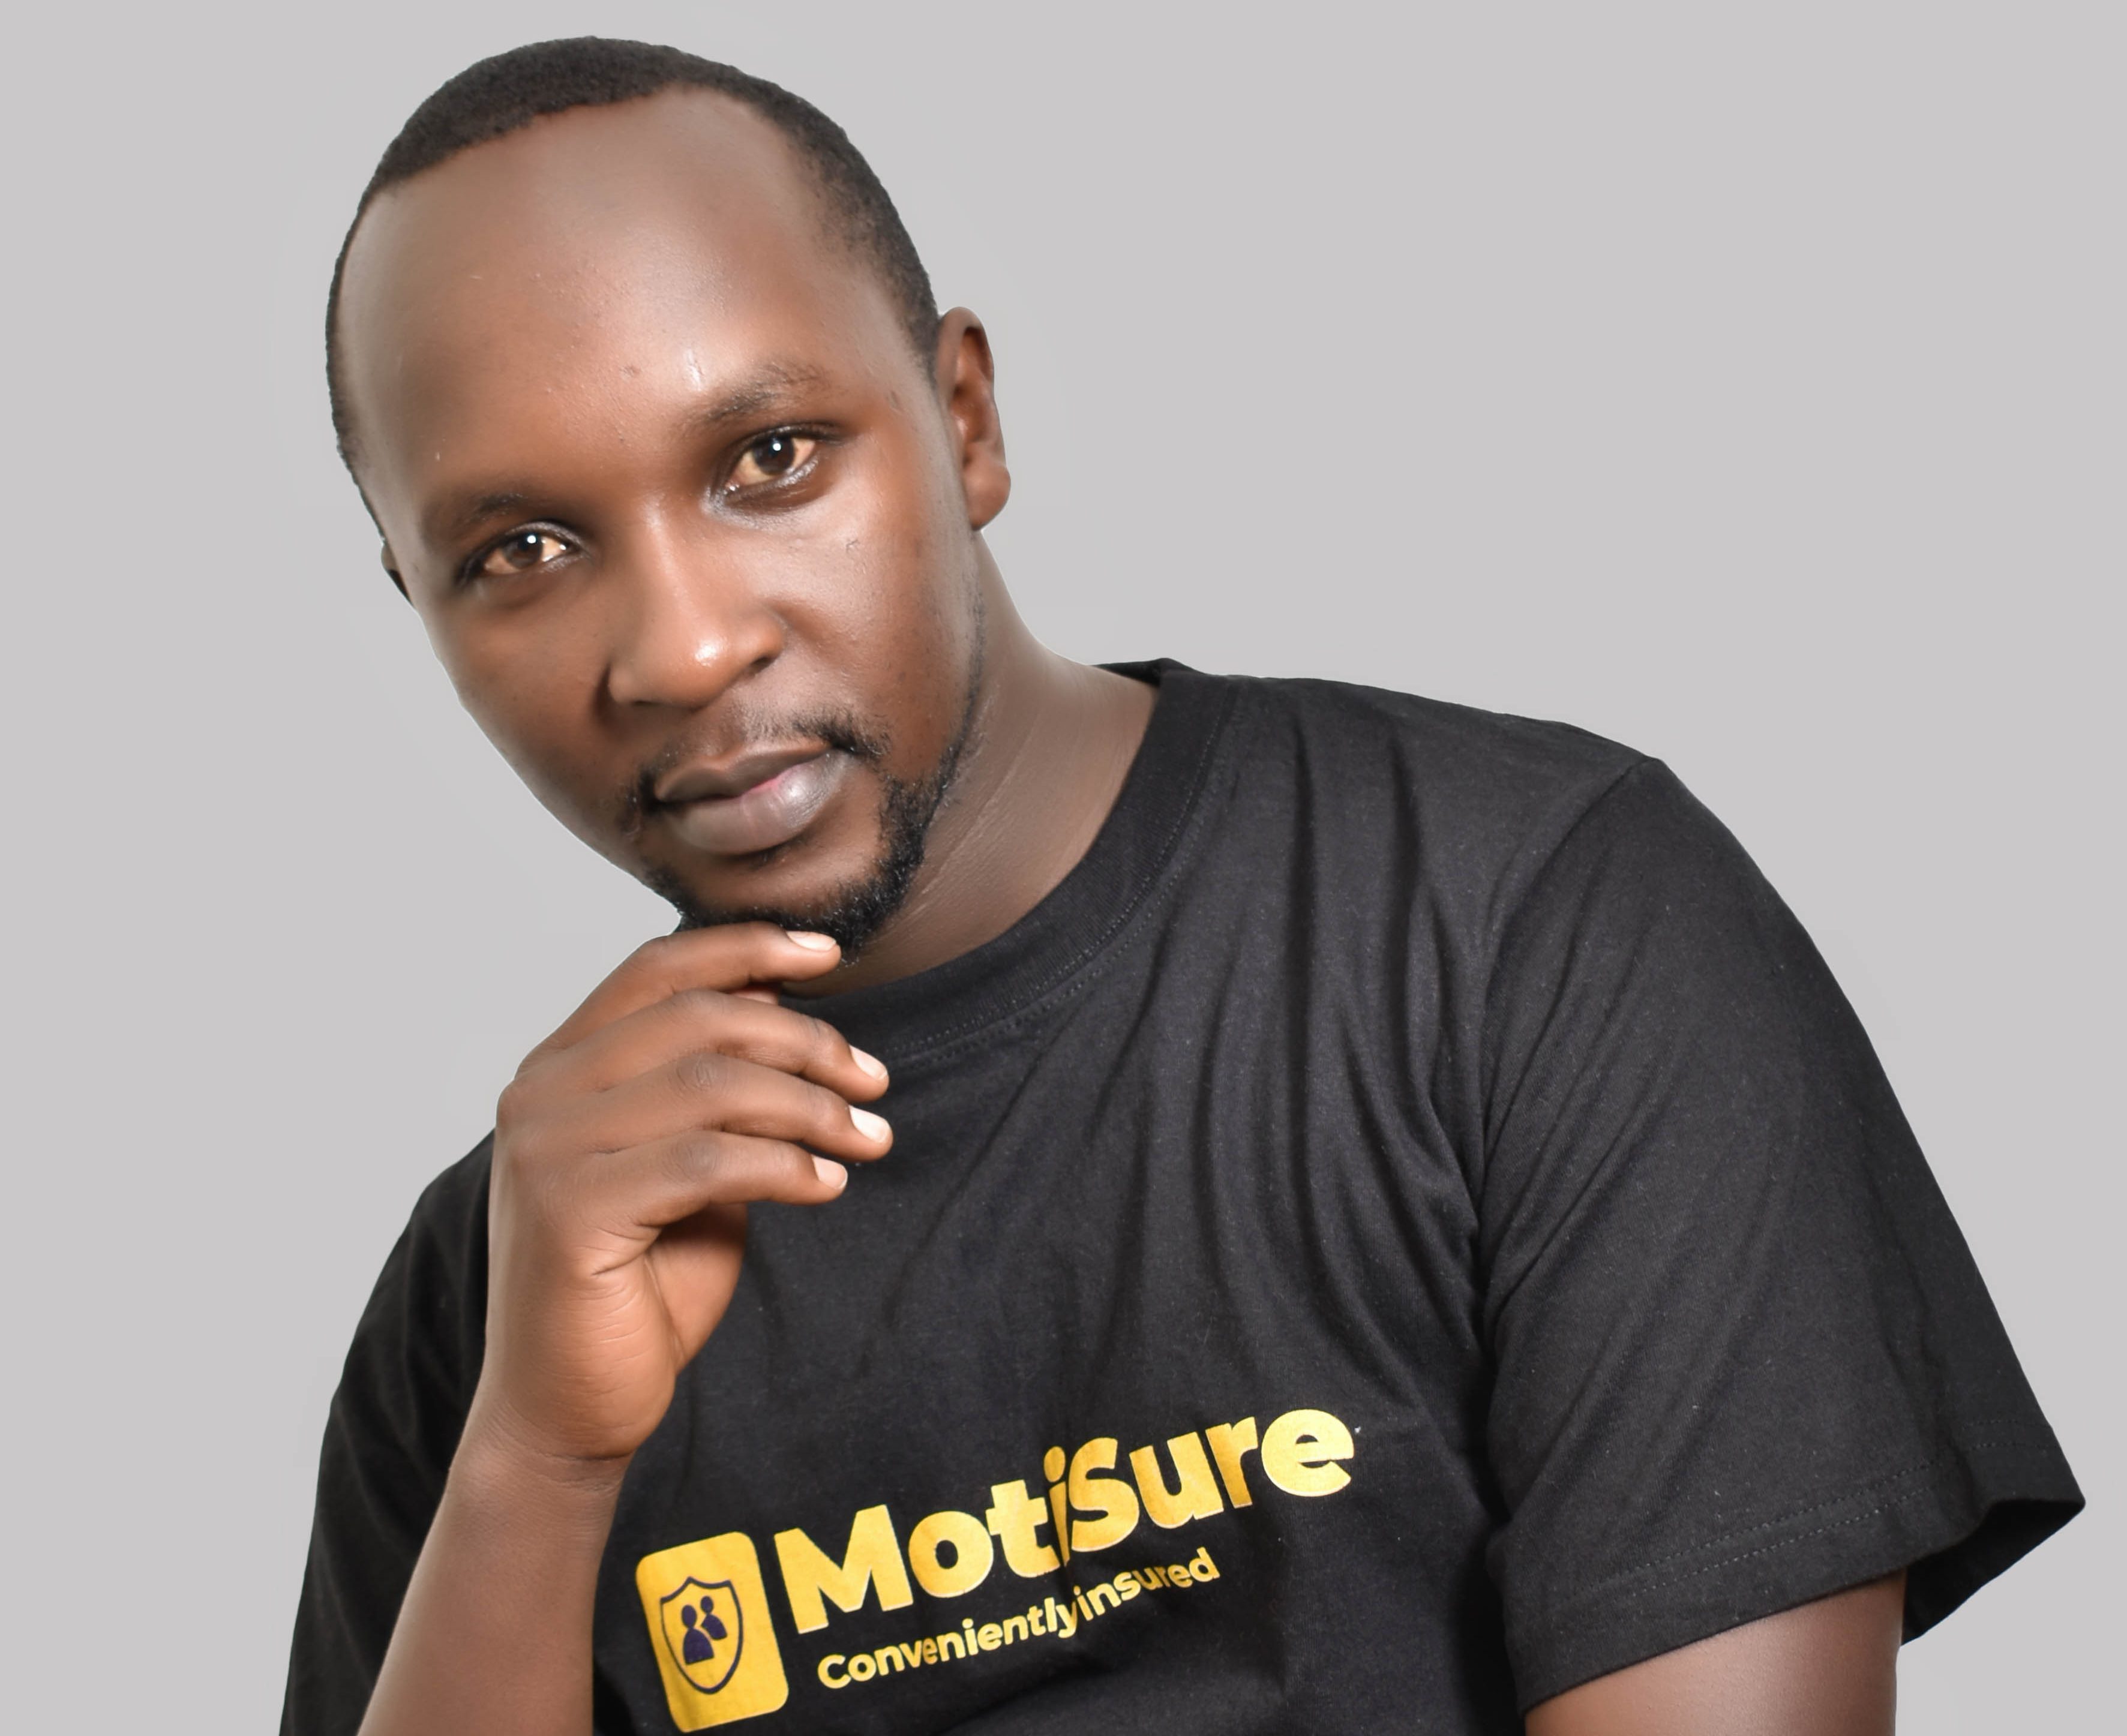 肯尼亚保险科技 MotiSure 依靠小额支付推动个人移动保险增长